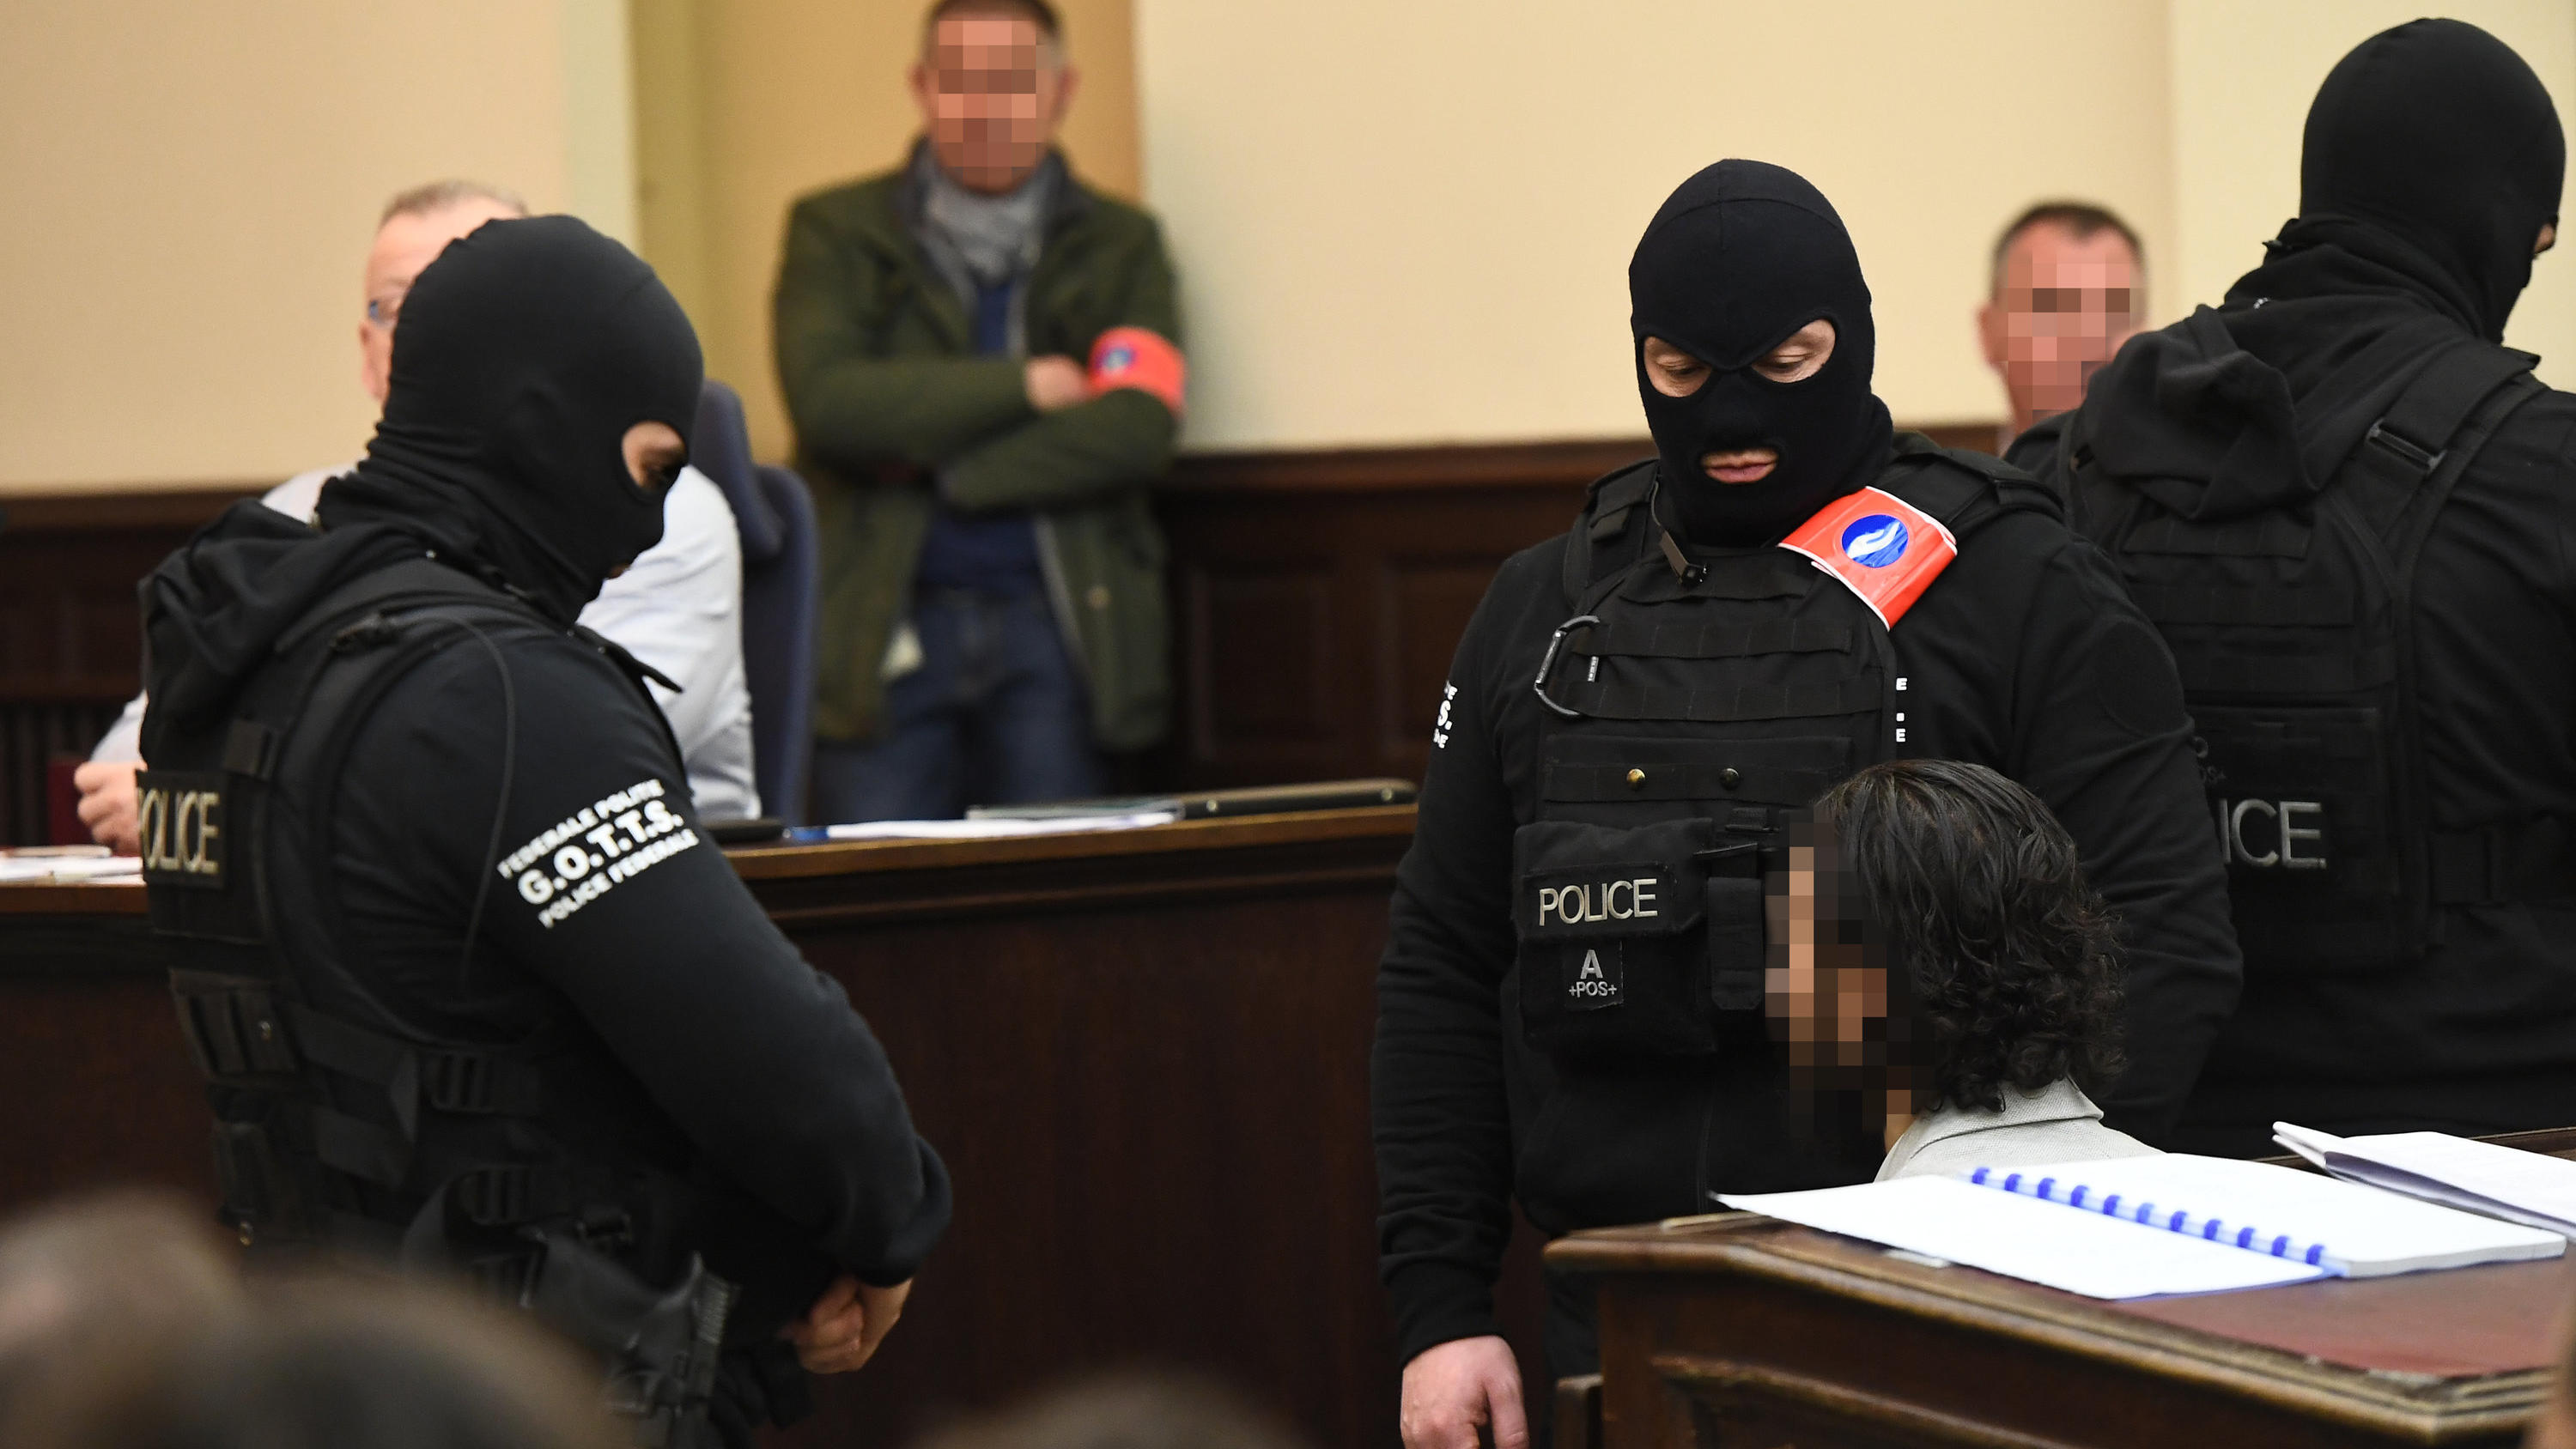 05.02.2018, Belgien, Brüssel: Polizisten bringen den mutmaßlichen islamistischen Terroristen Salah Abdeslam (r) in den Gerichtssaal. Der 28-jährige Franzose soll zur Terrorzelle gehören, die die schweren Anschläge in Paris im November 2015 und in Brü